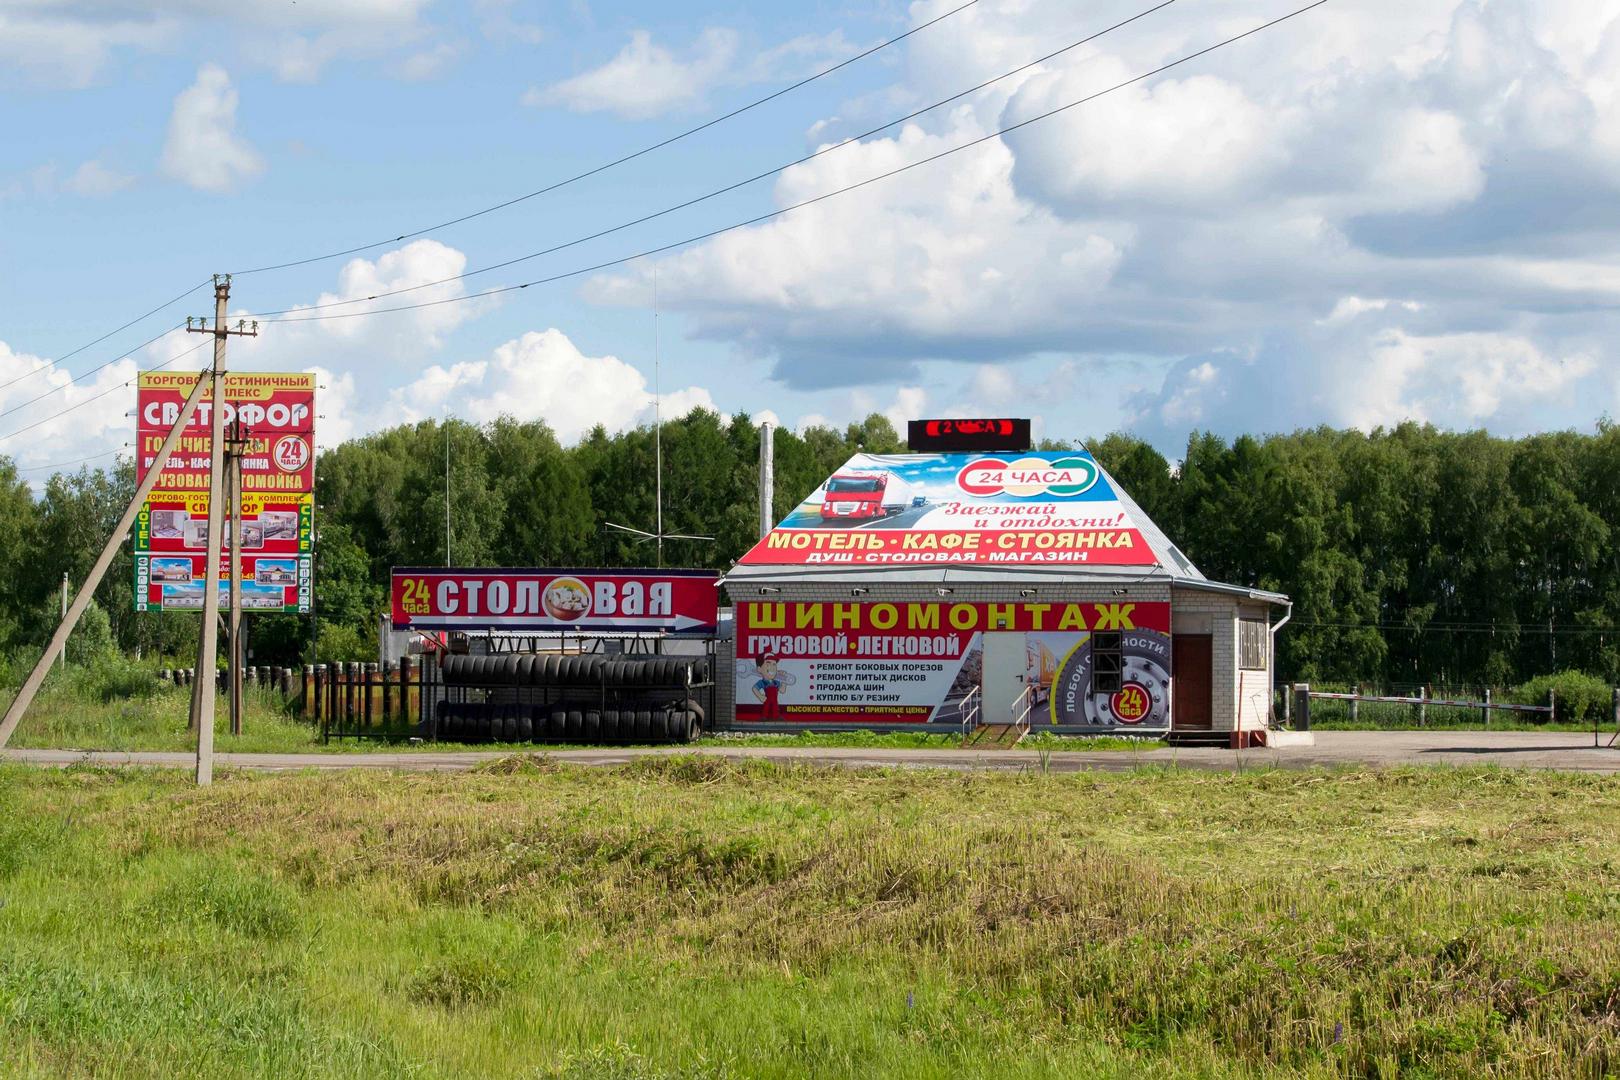 На территории ТГК 'Светофор' в городе Вязники есть шиномонтаж